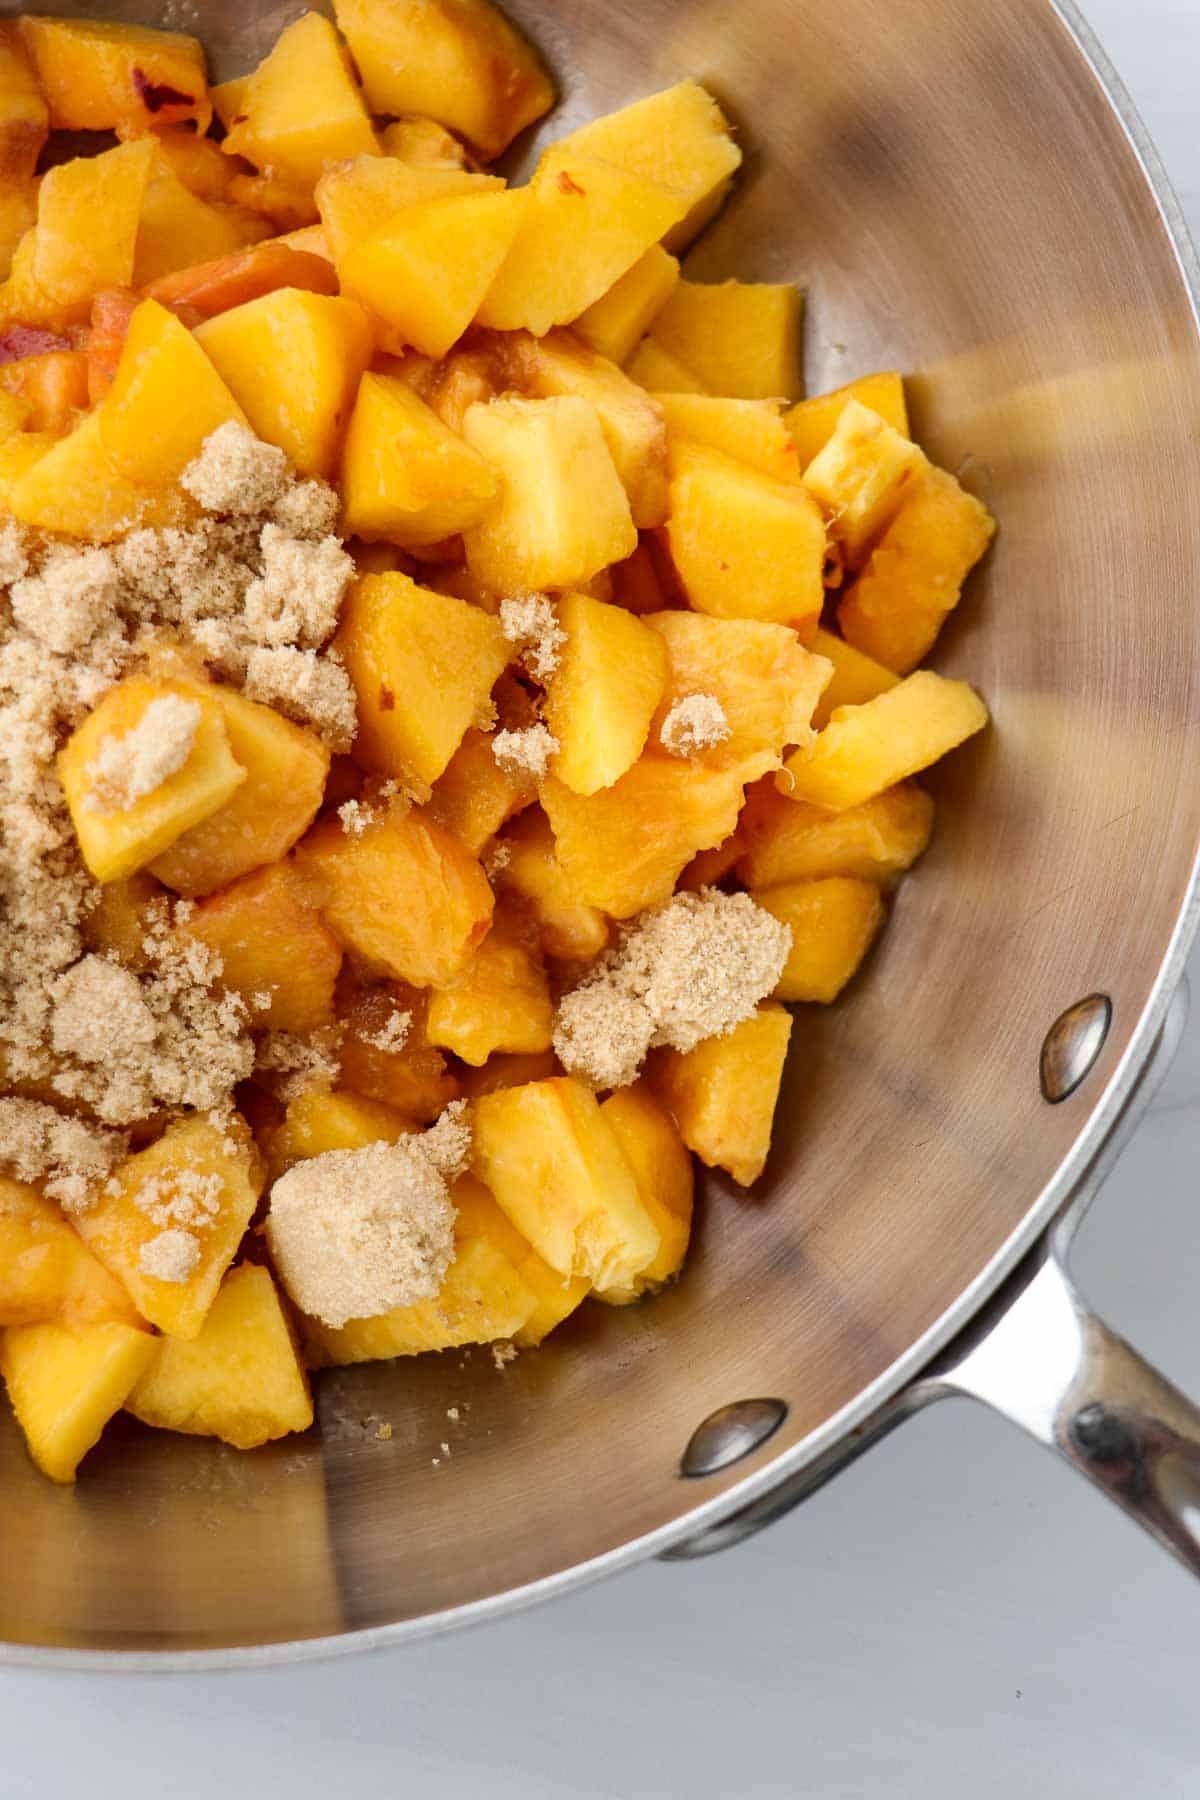 Peaches and brown sugar in a saucepan.